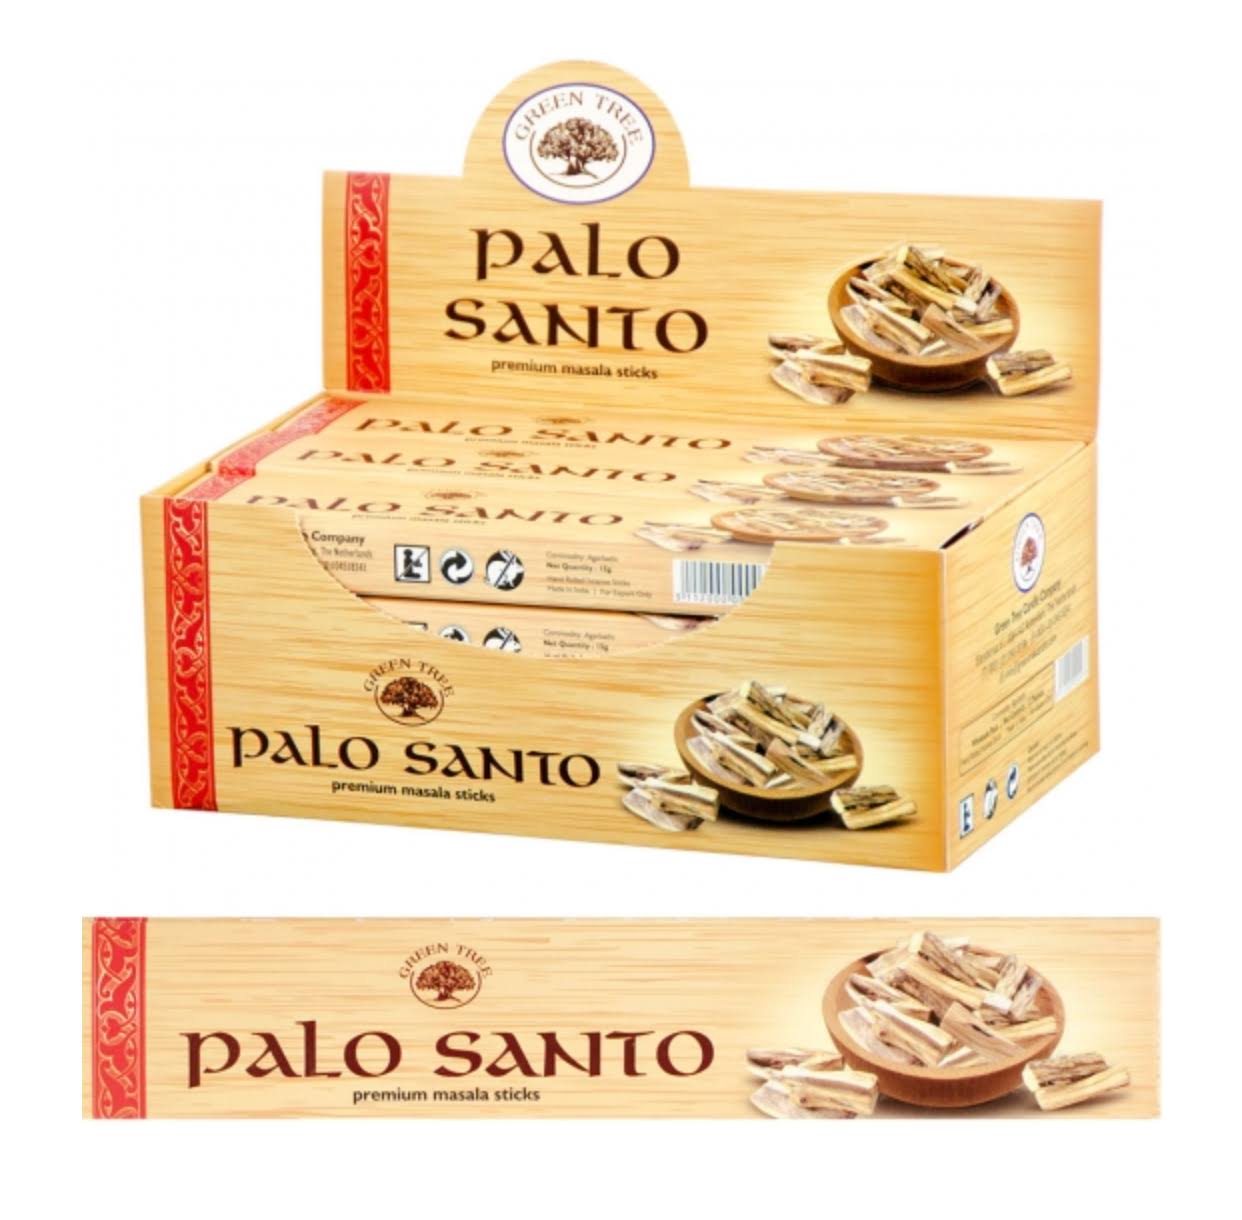 Palo Santo Premium Natural Incense Sticks - 1 Box (15g)